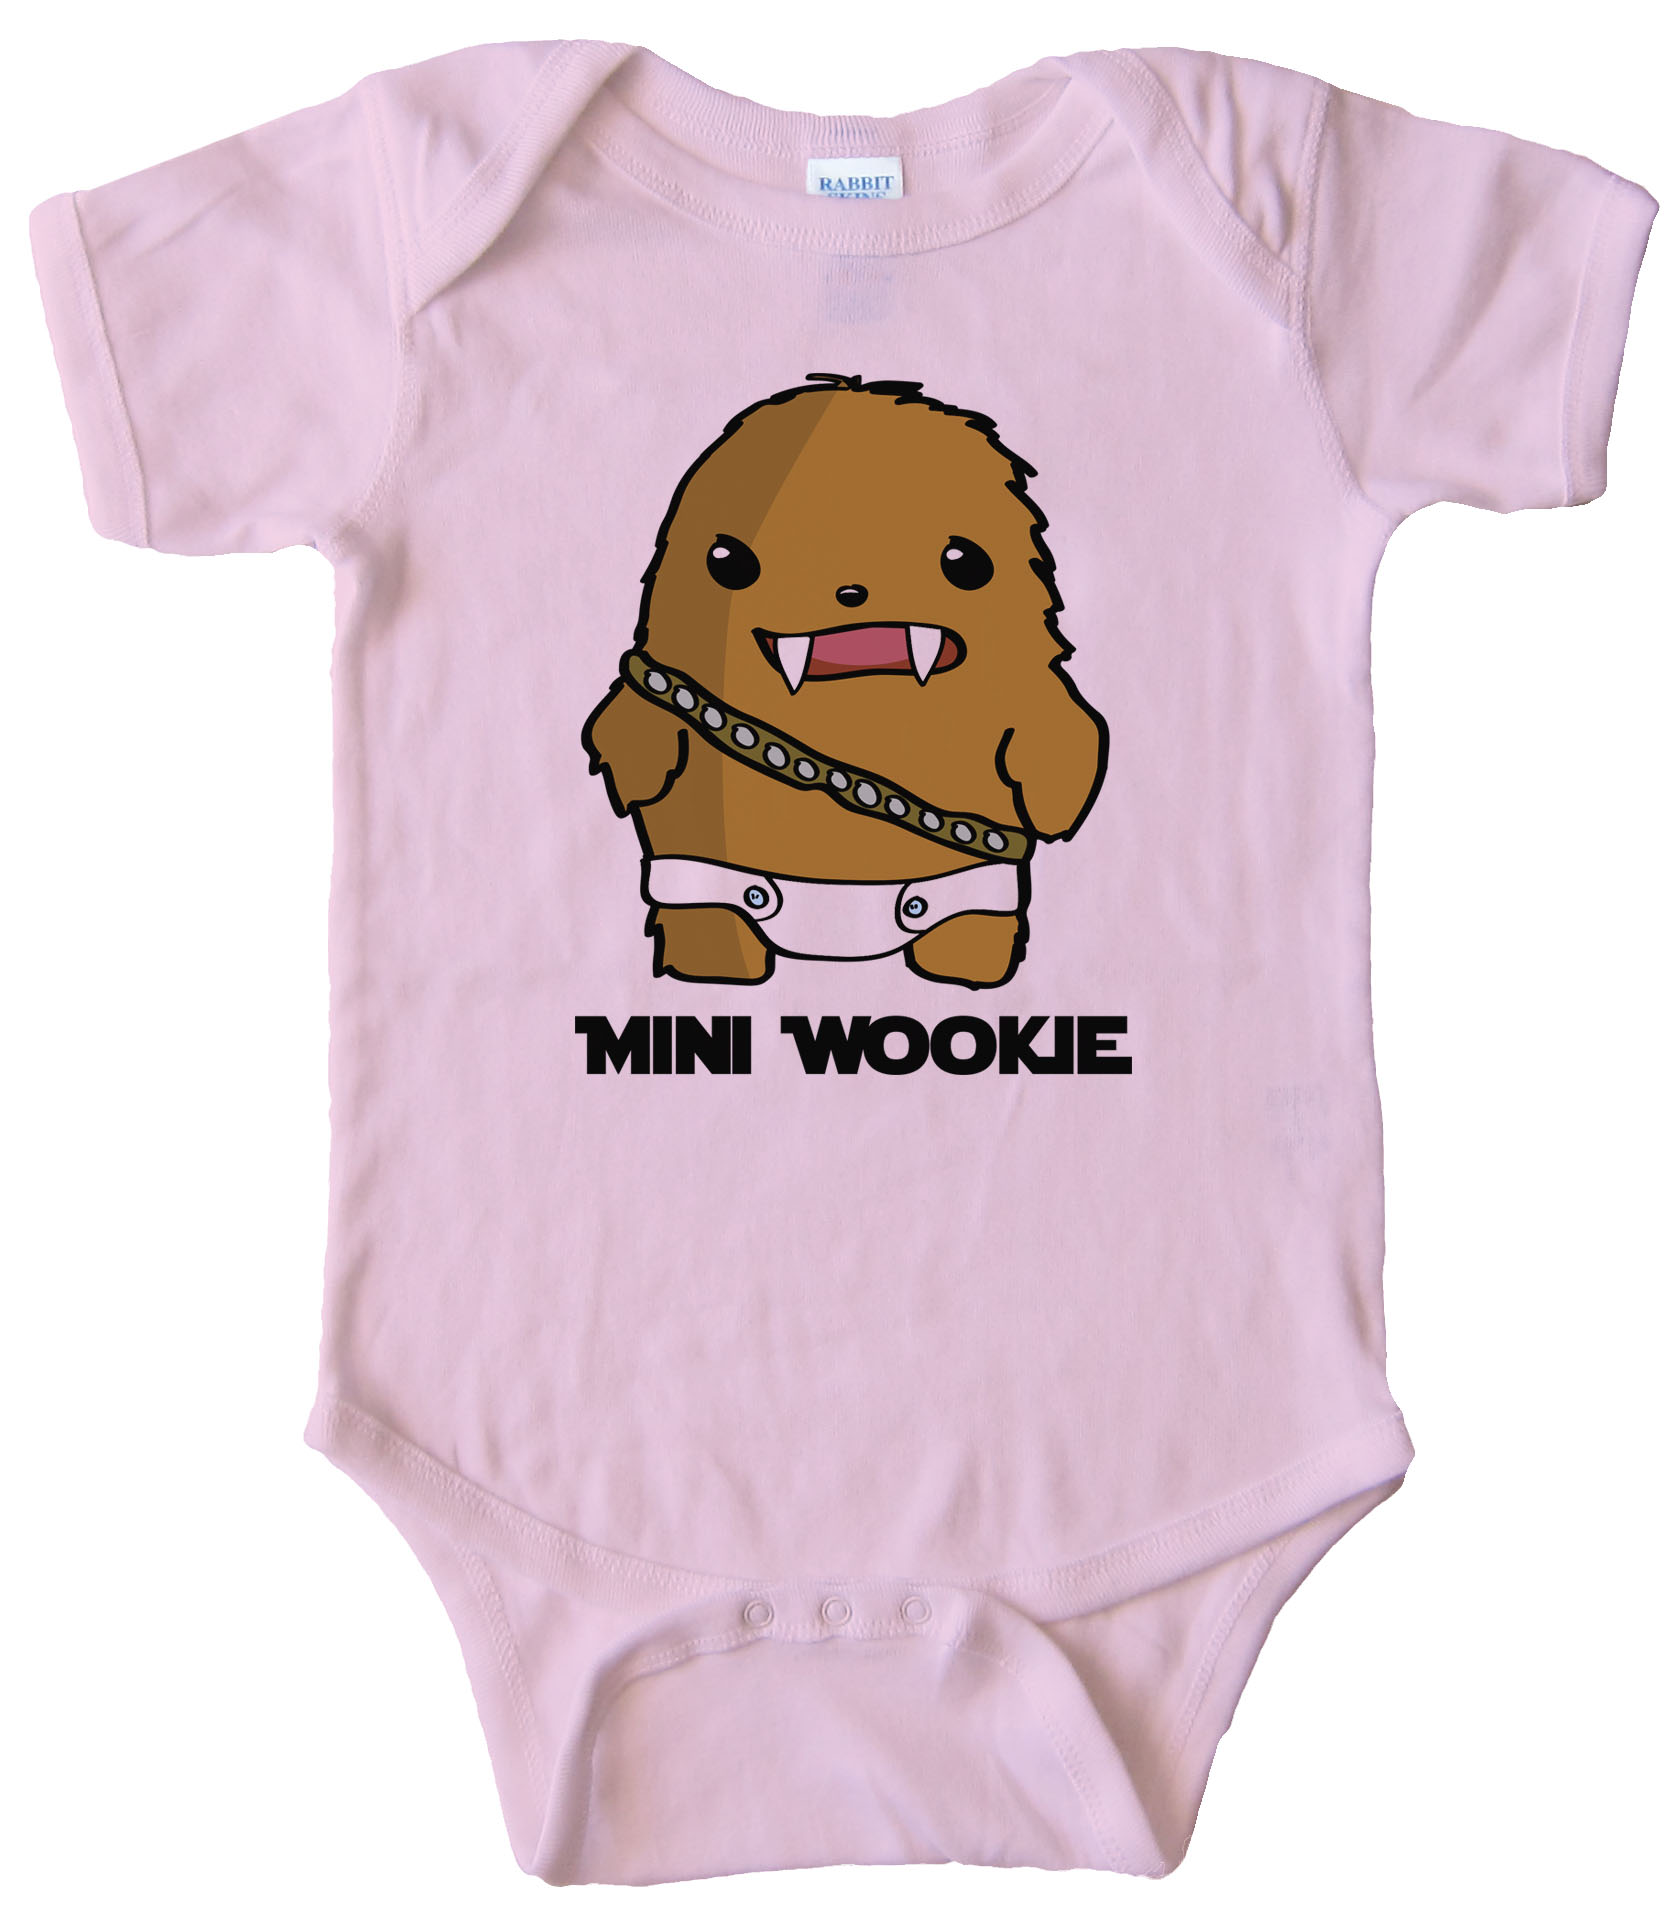 Mini Wookie Baby Chewbacca - Star Wars Bodysuit